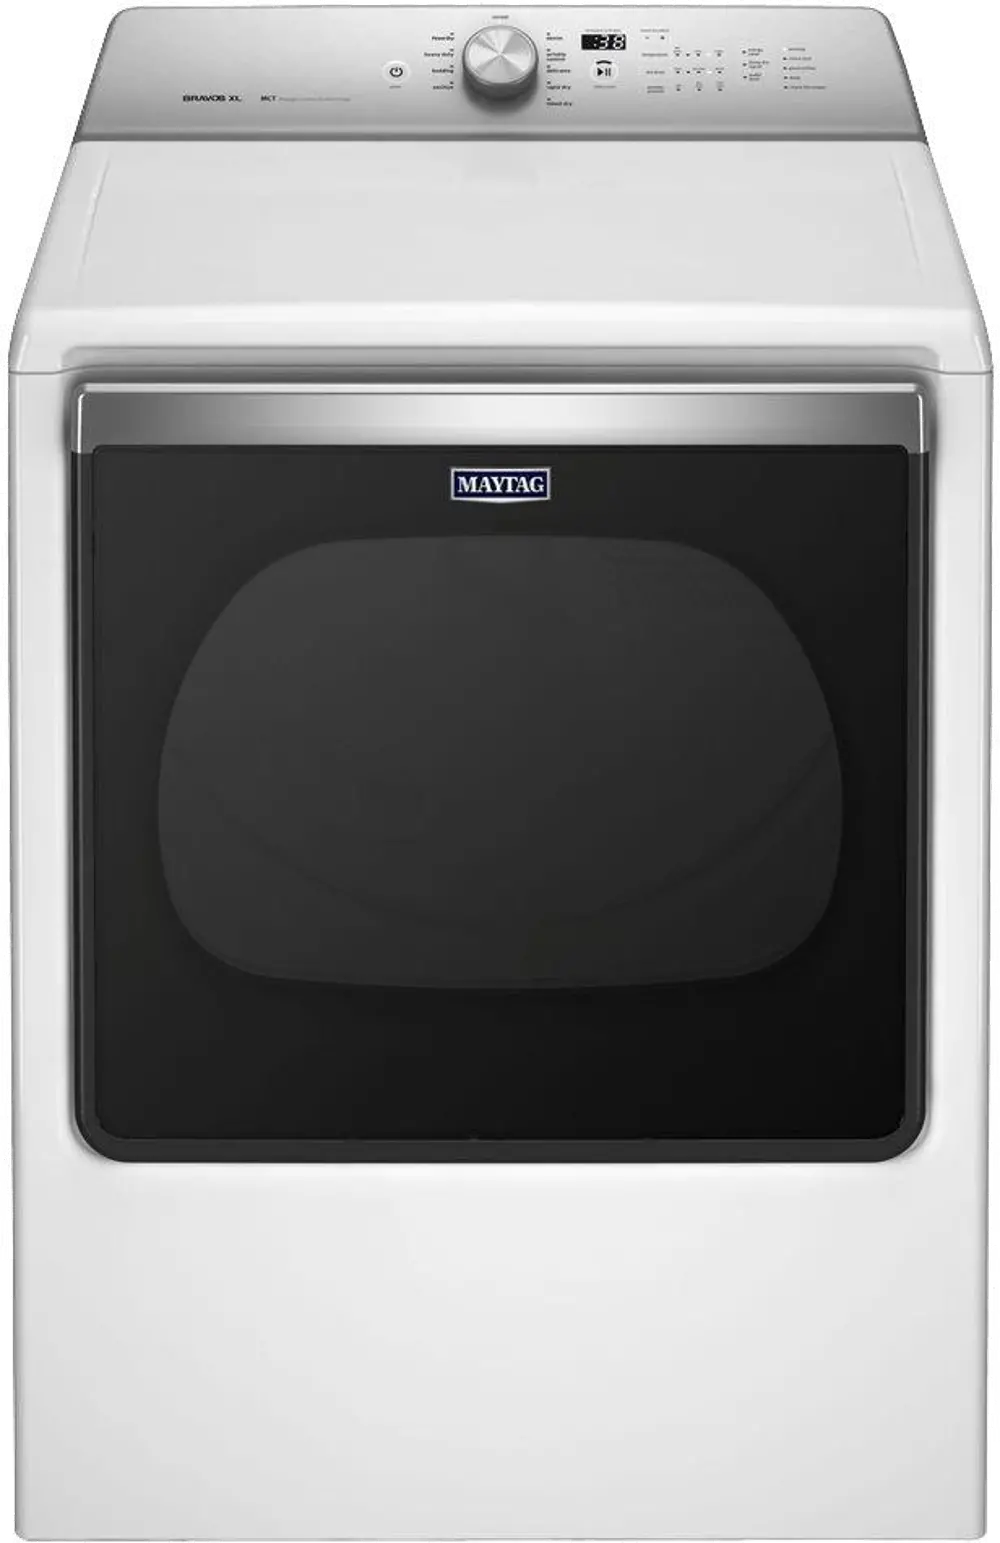 MEDB835DW Maytag Electric Dryer - 8.8 cu. ft. White-1